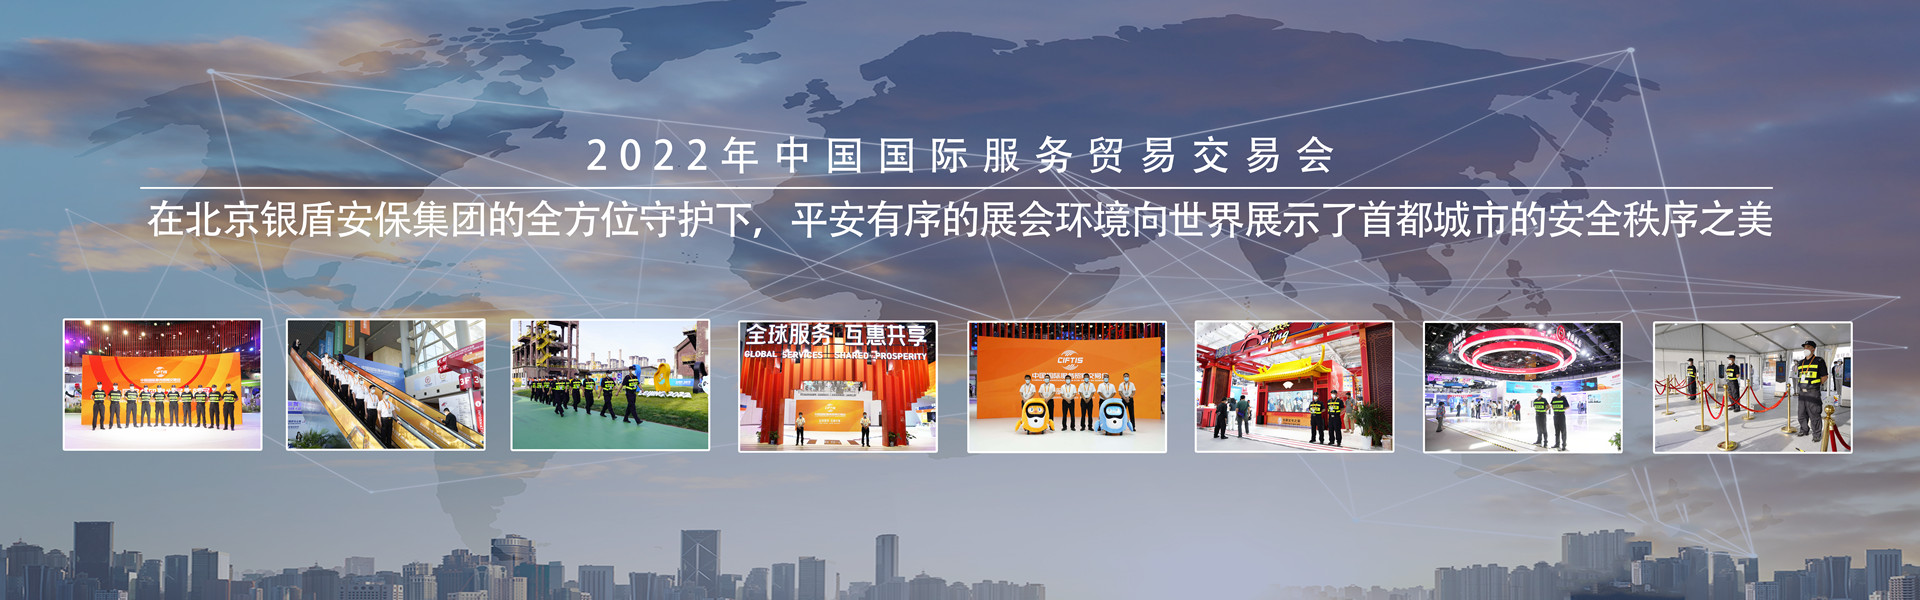 北京银盾保安服务有限公司为服贸会提供全方位安保安检服务